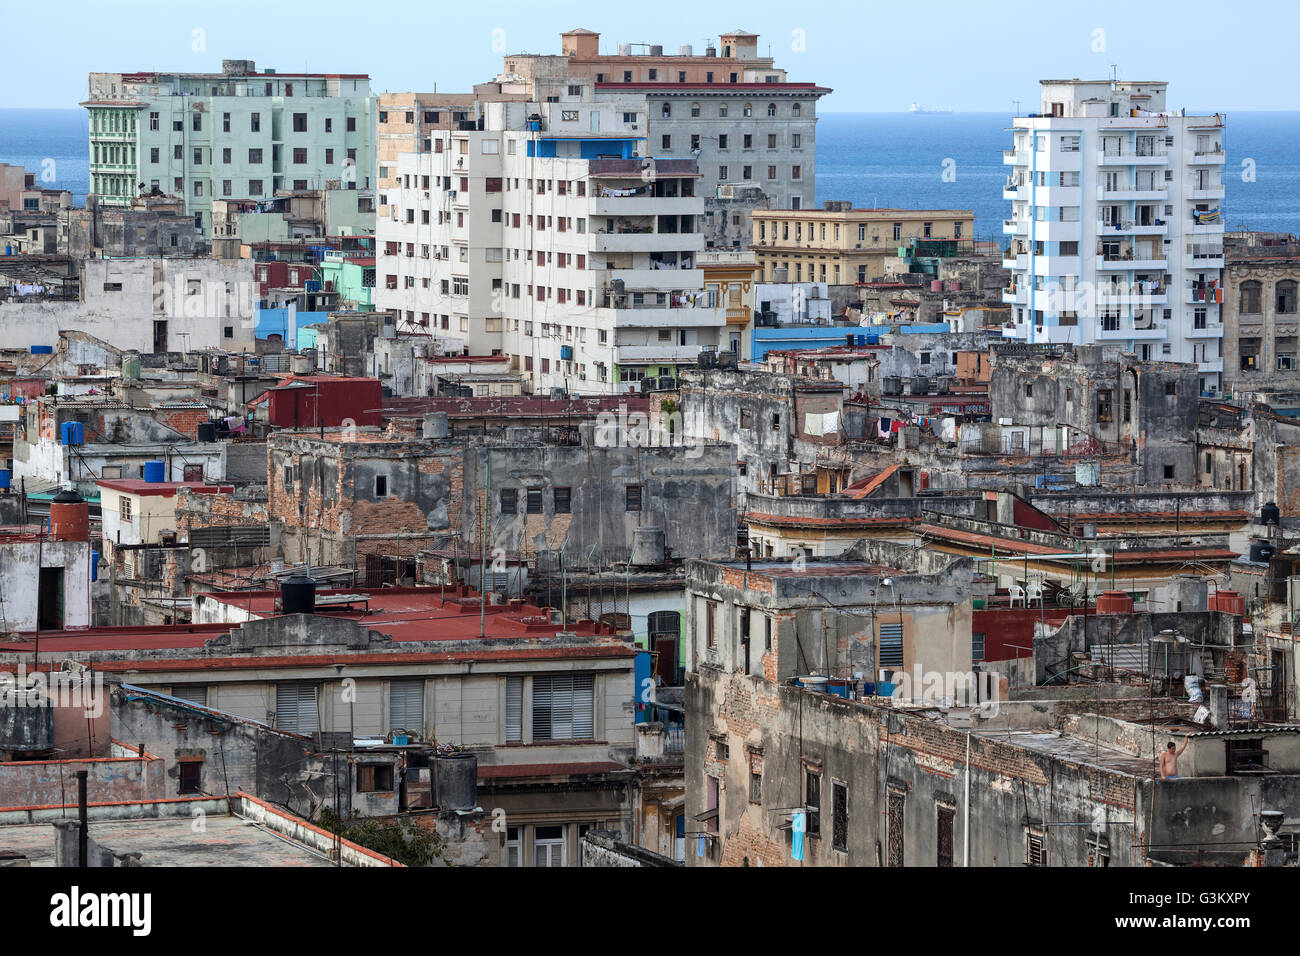 Ansicht von baufälligen Häusern und Dächern im Zentrum der Stadt, Havanna, Kuba Stockfoto